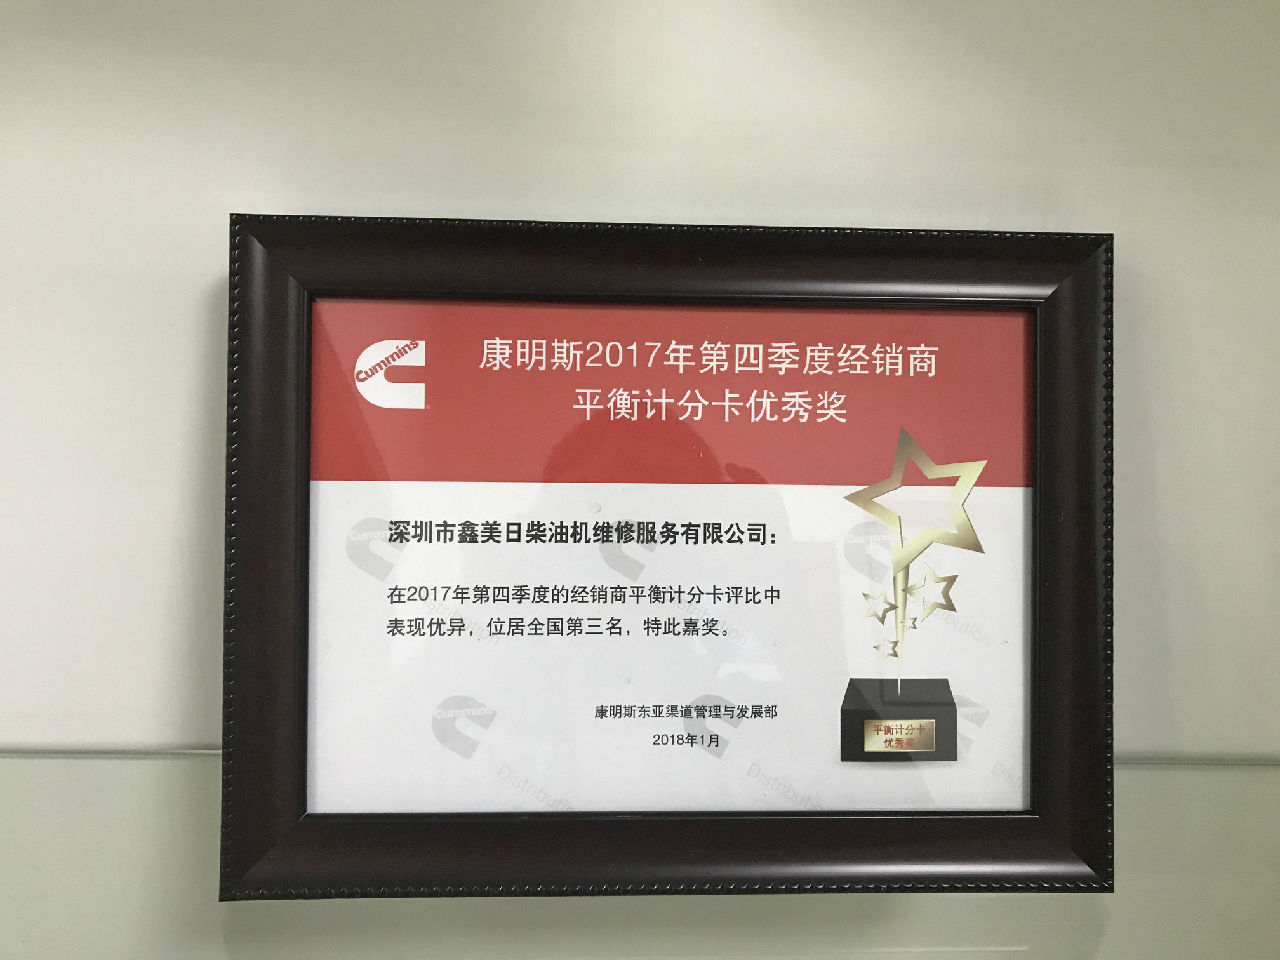 2017年第四季度经销商平衡计分卡优秀奖_c